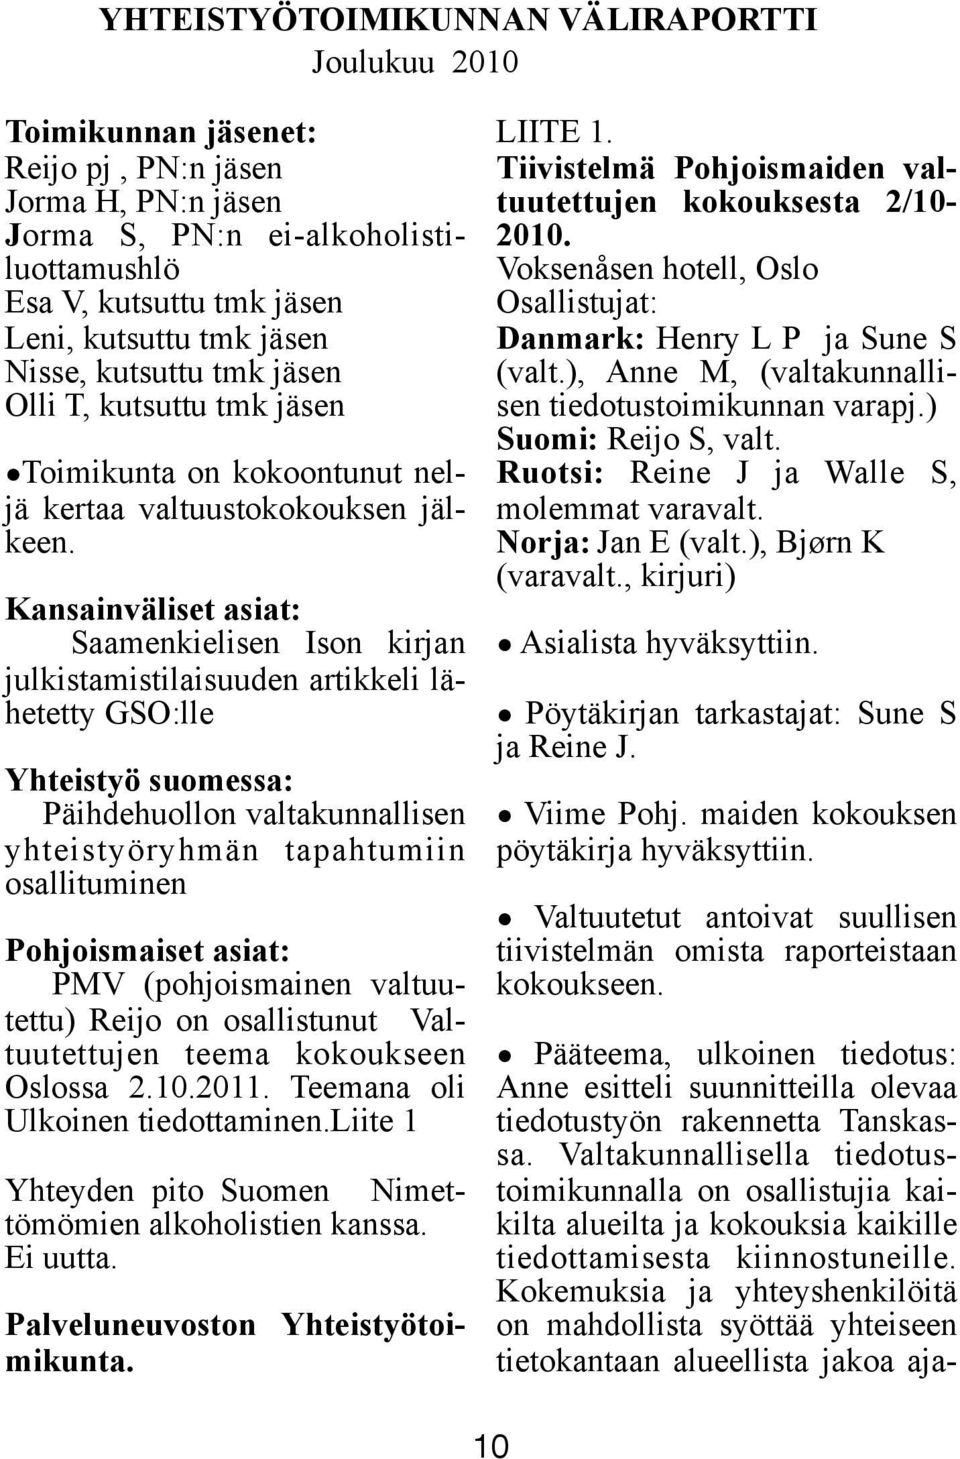 Kansainväliset asiat: Saamenkielisen Ison kirjan julkistamistilaisuuden artikkeli lähetetty GSO:lle Yhteistyö suomessa: Päihdehuollon valtakunnallisen yhteistyöryhmän tapahtumiin osallituminen